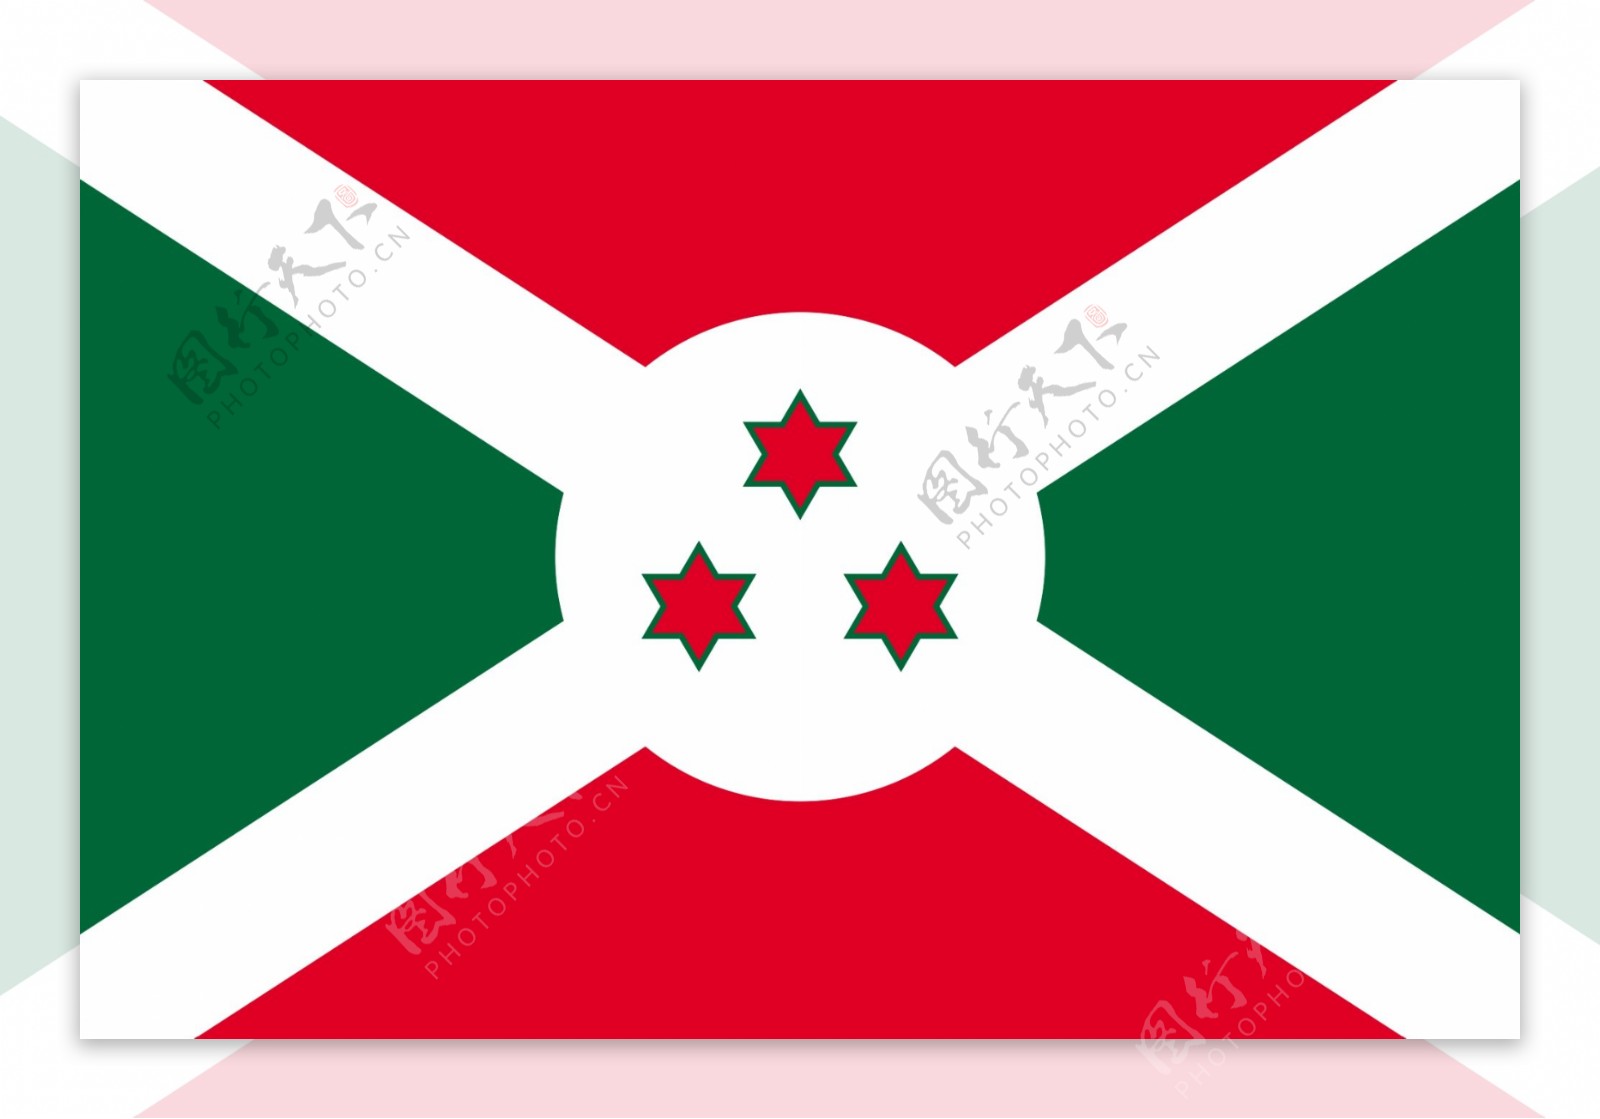 布隆迪国旗图片